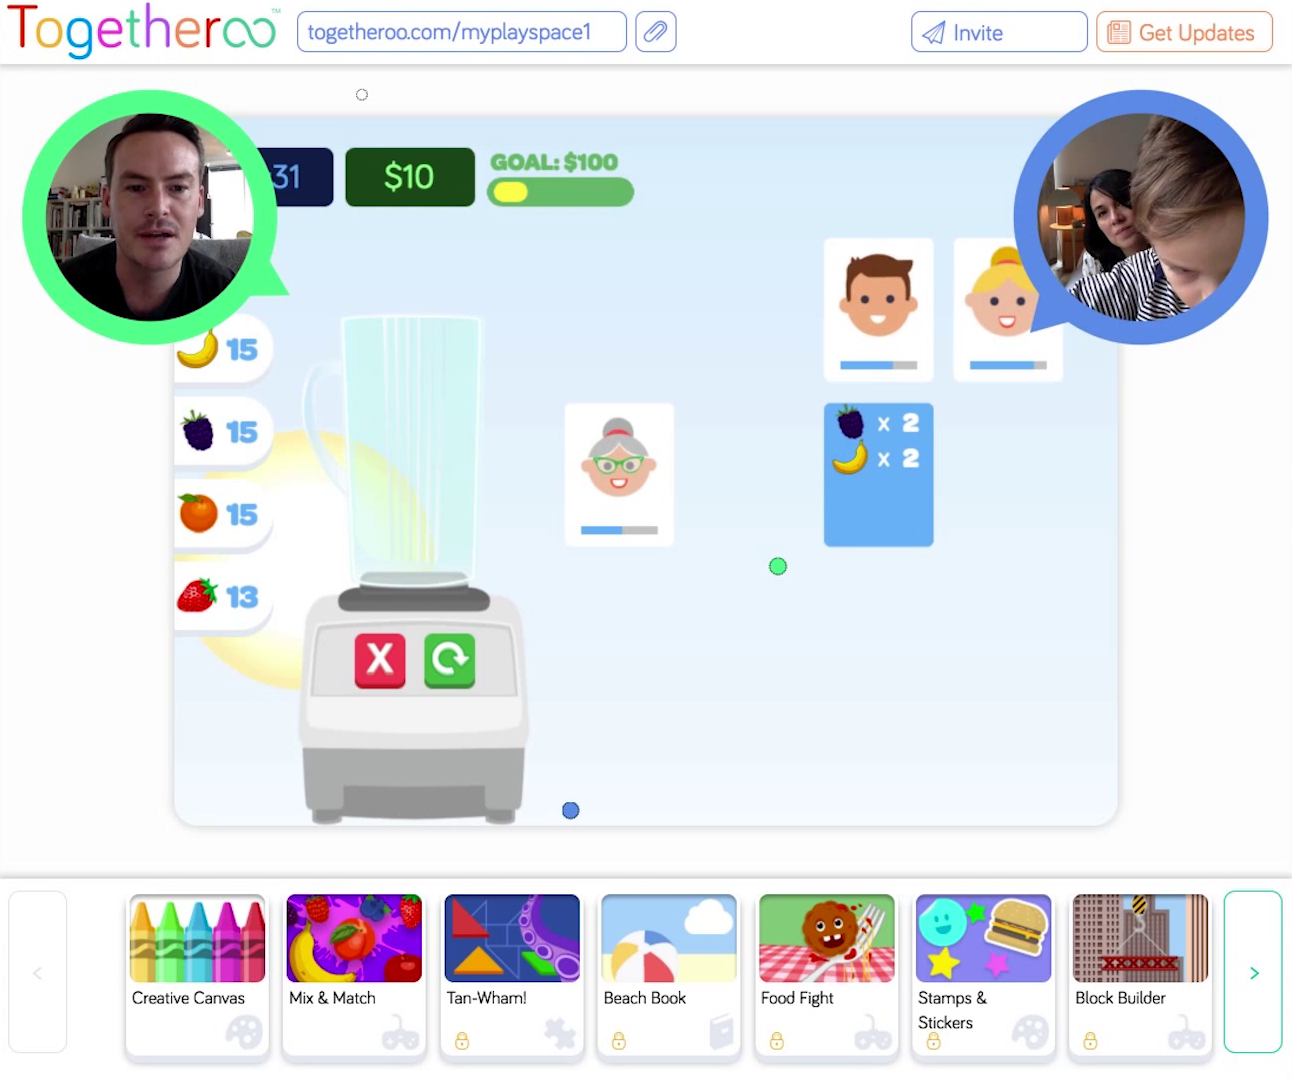 Playful Video Chat Platform - Client: Togetheroo